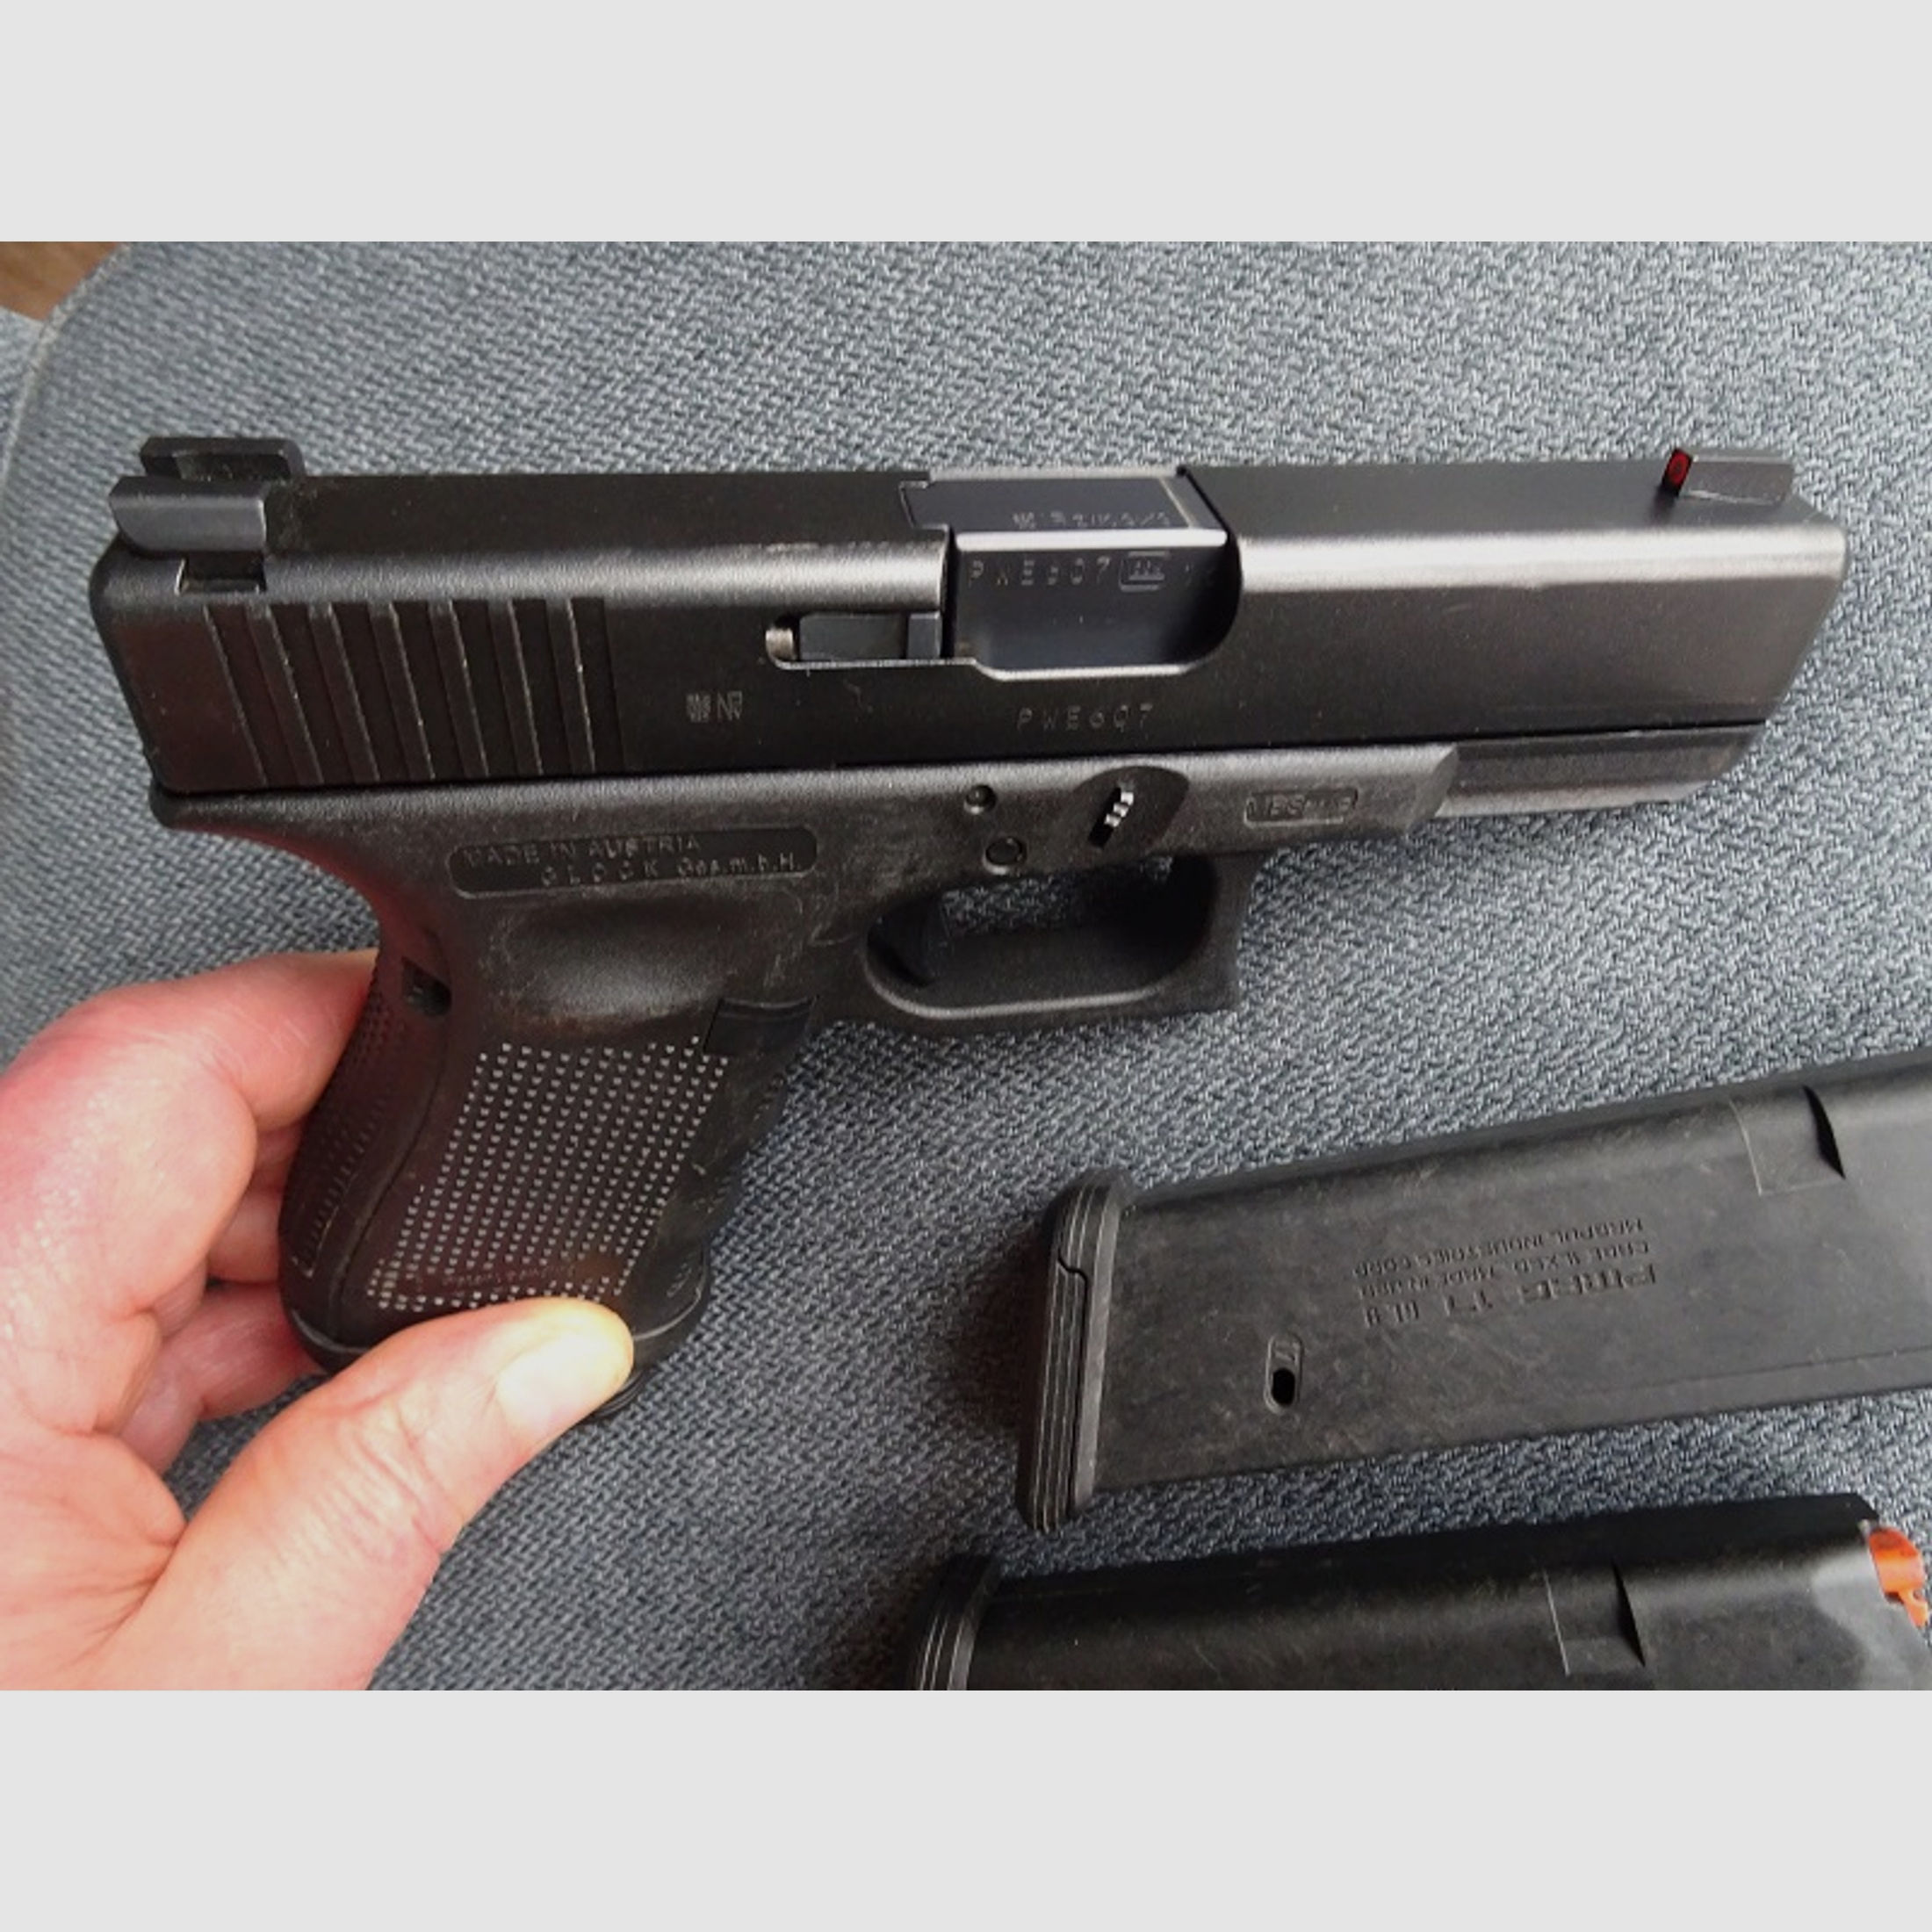 Halbautom. Pistole Glock, Modell 19, Gen 4, Kal. 9mm Luger